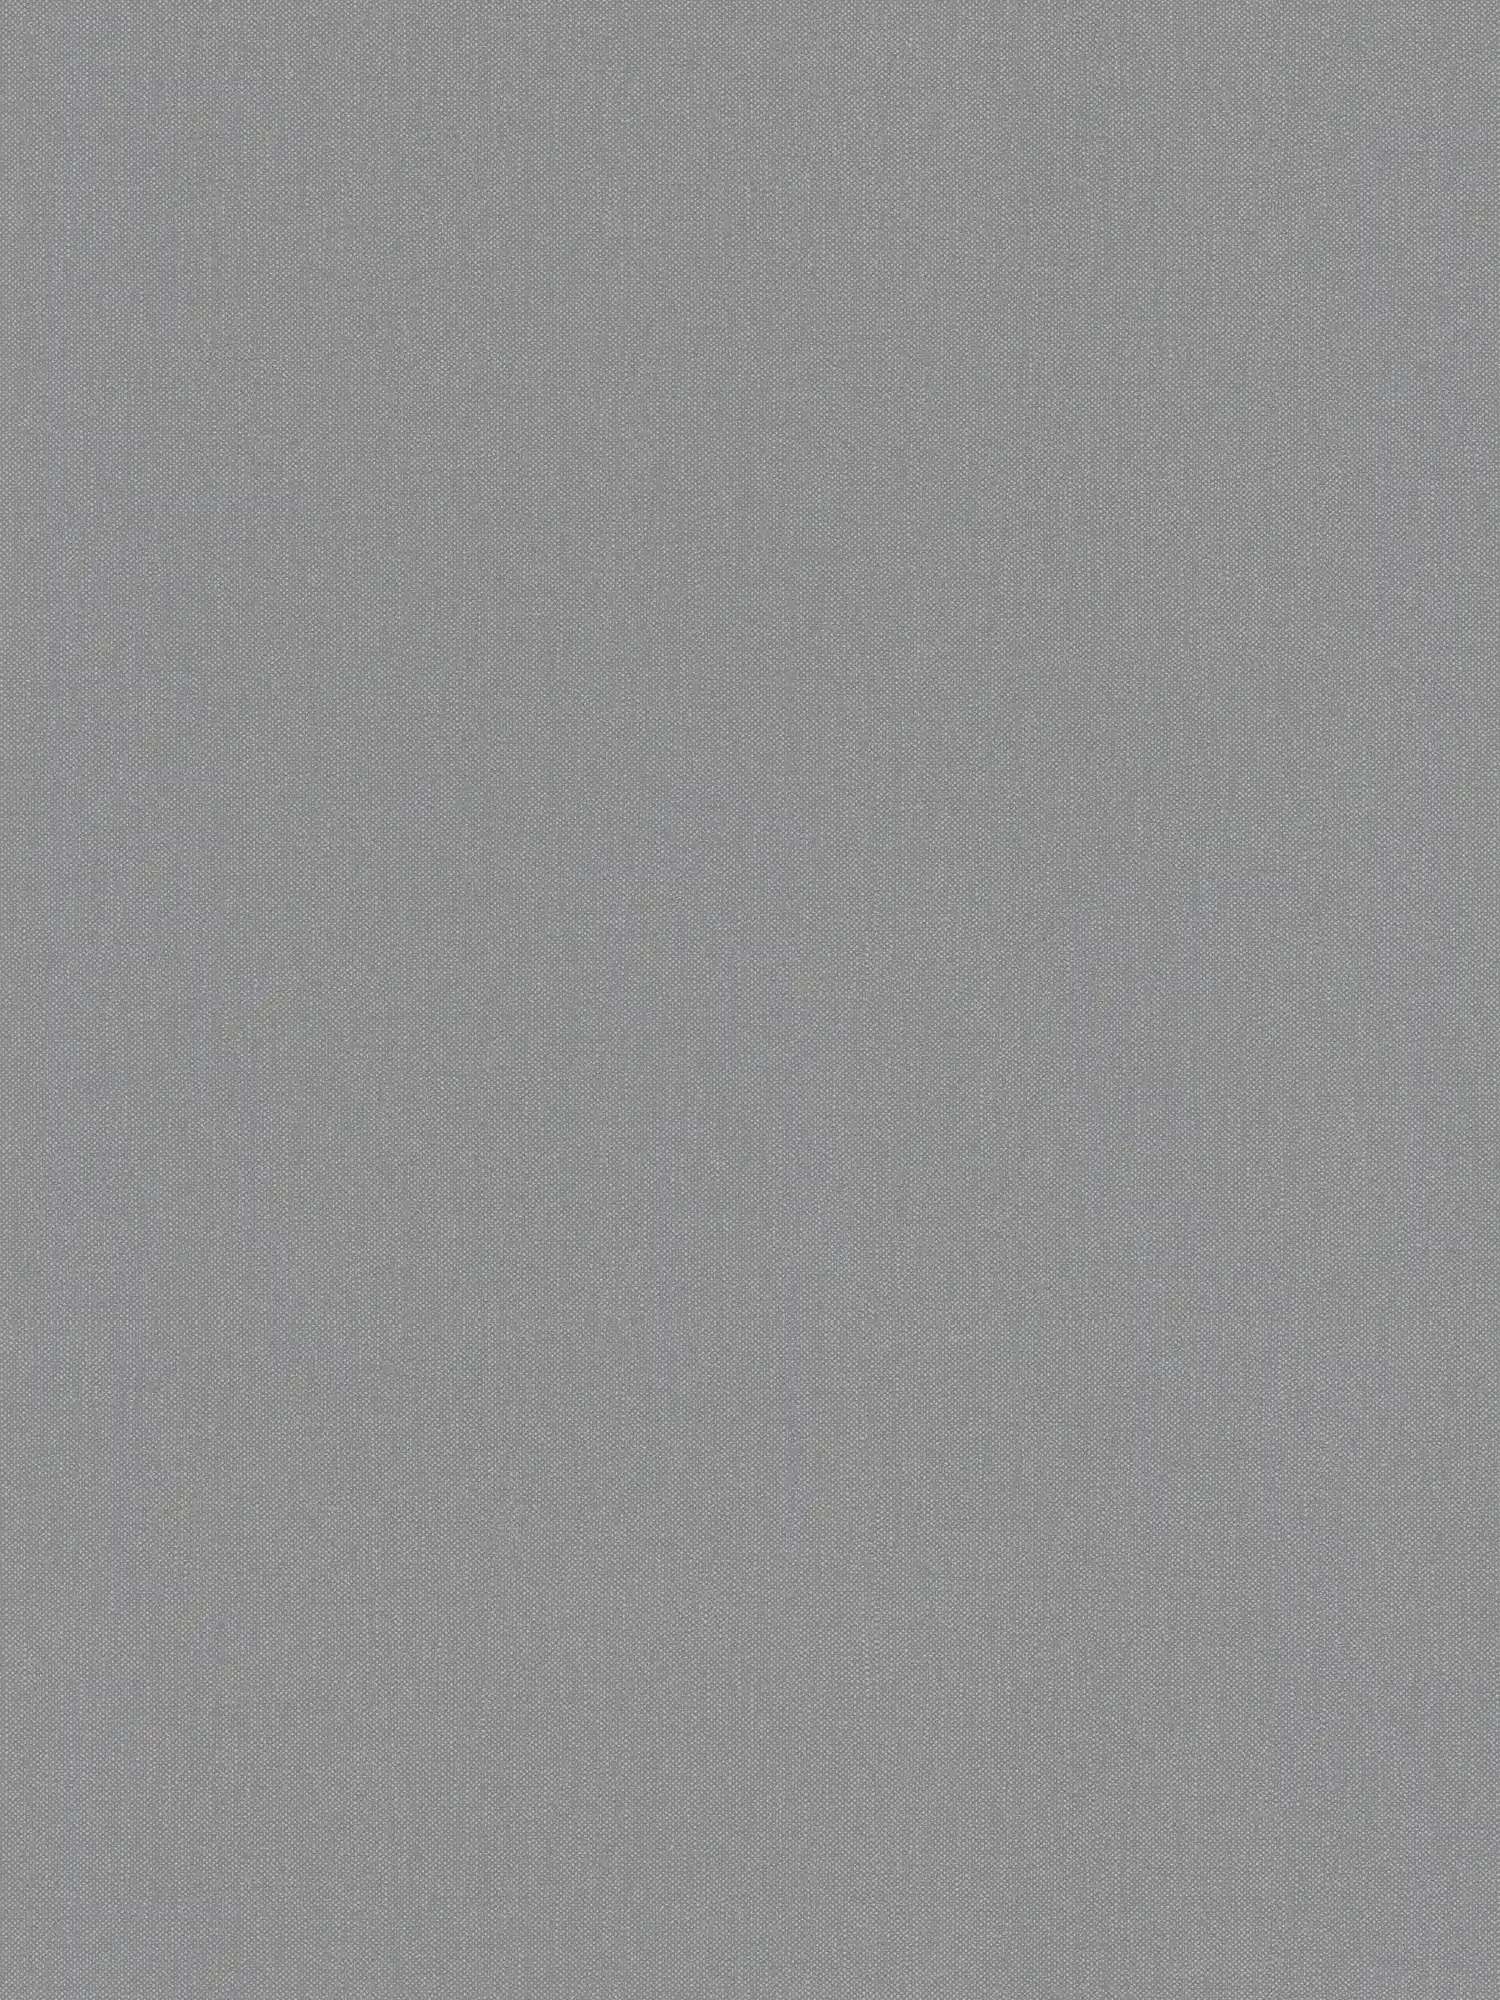 Linen look wallpaper with texture pattern in elegant grey
